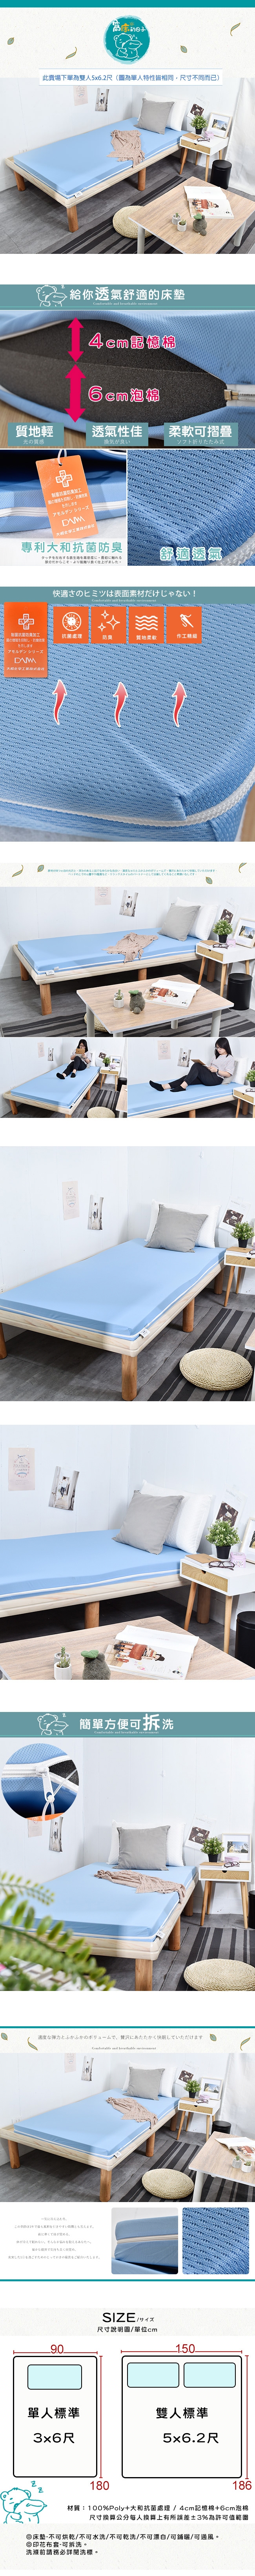 窩床的日子-大和抗菌10cm加厚記憶床墊-雙人5x6.2尺 床墊/雙人床墊/抗菌床墊/加厚